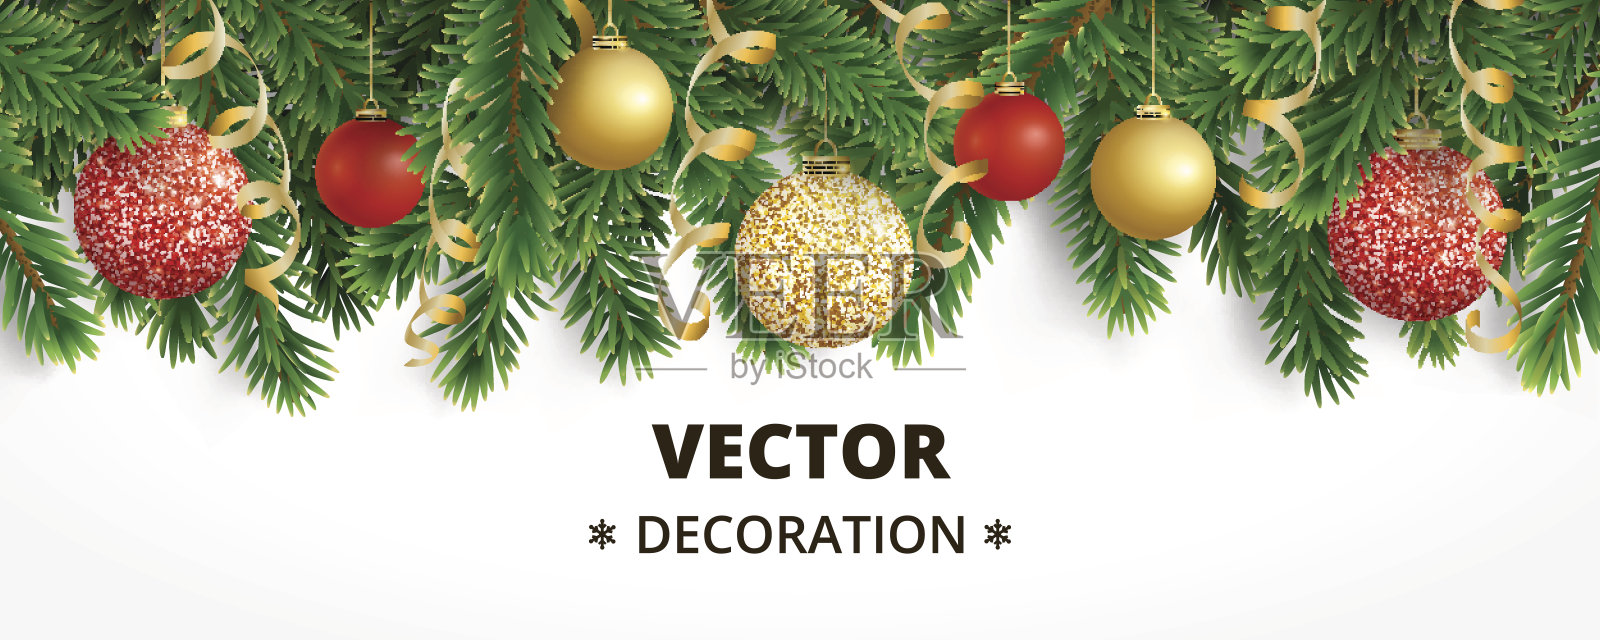 水平圣诞横幅与杉树花环，挂球设计模板素材